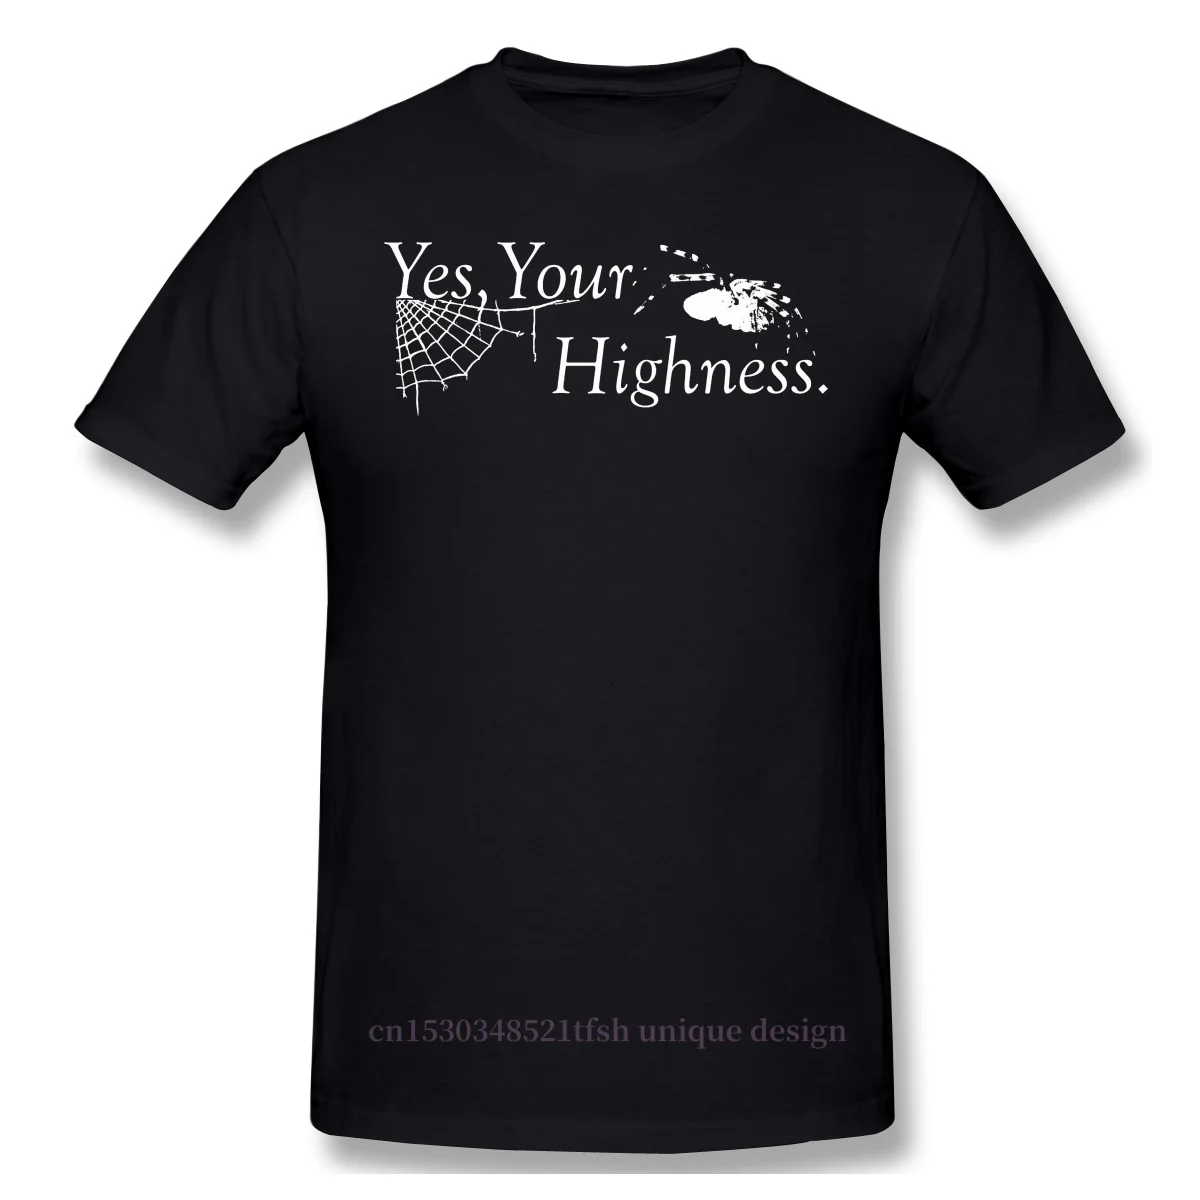 

Мужская таинственная футболка из аниме «Черный Батлер» Себастьян «Да, ваша высотость». Футболки из чистого хлопка Харадзюку, рубашка для вз...